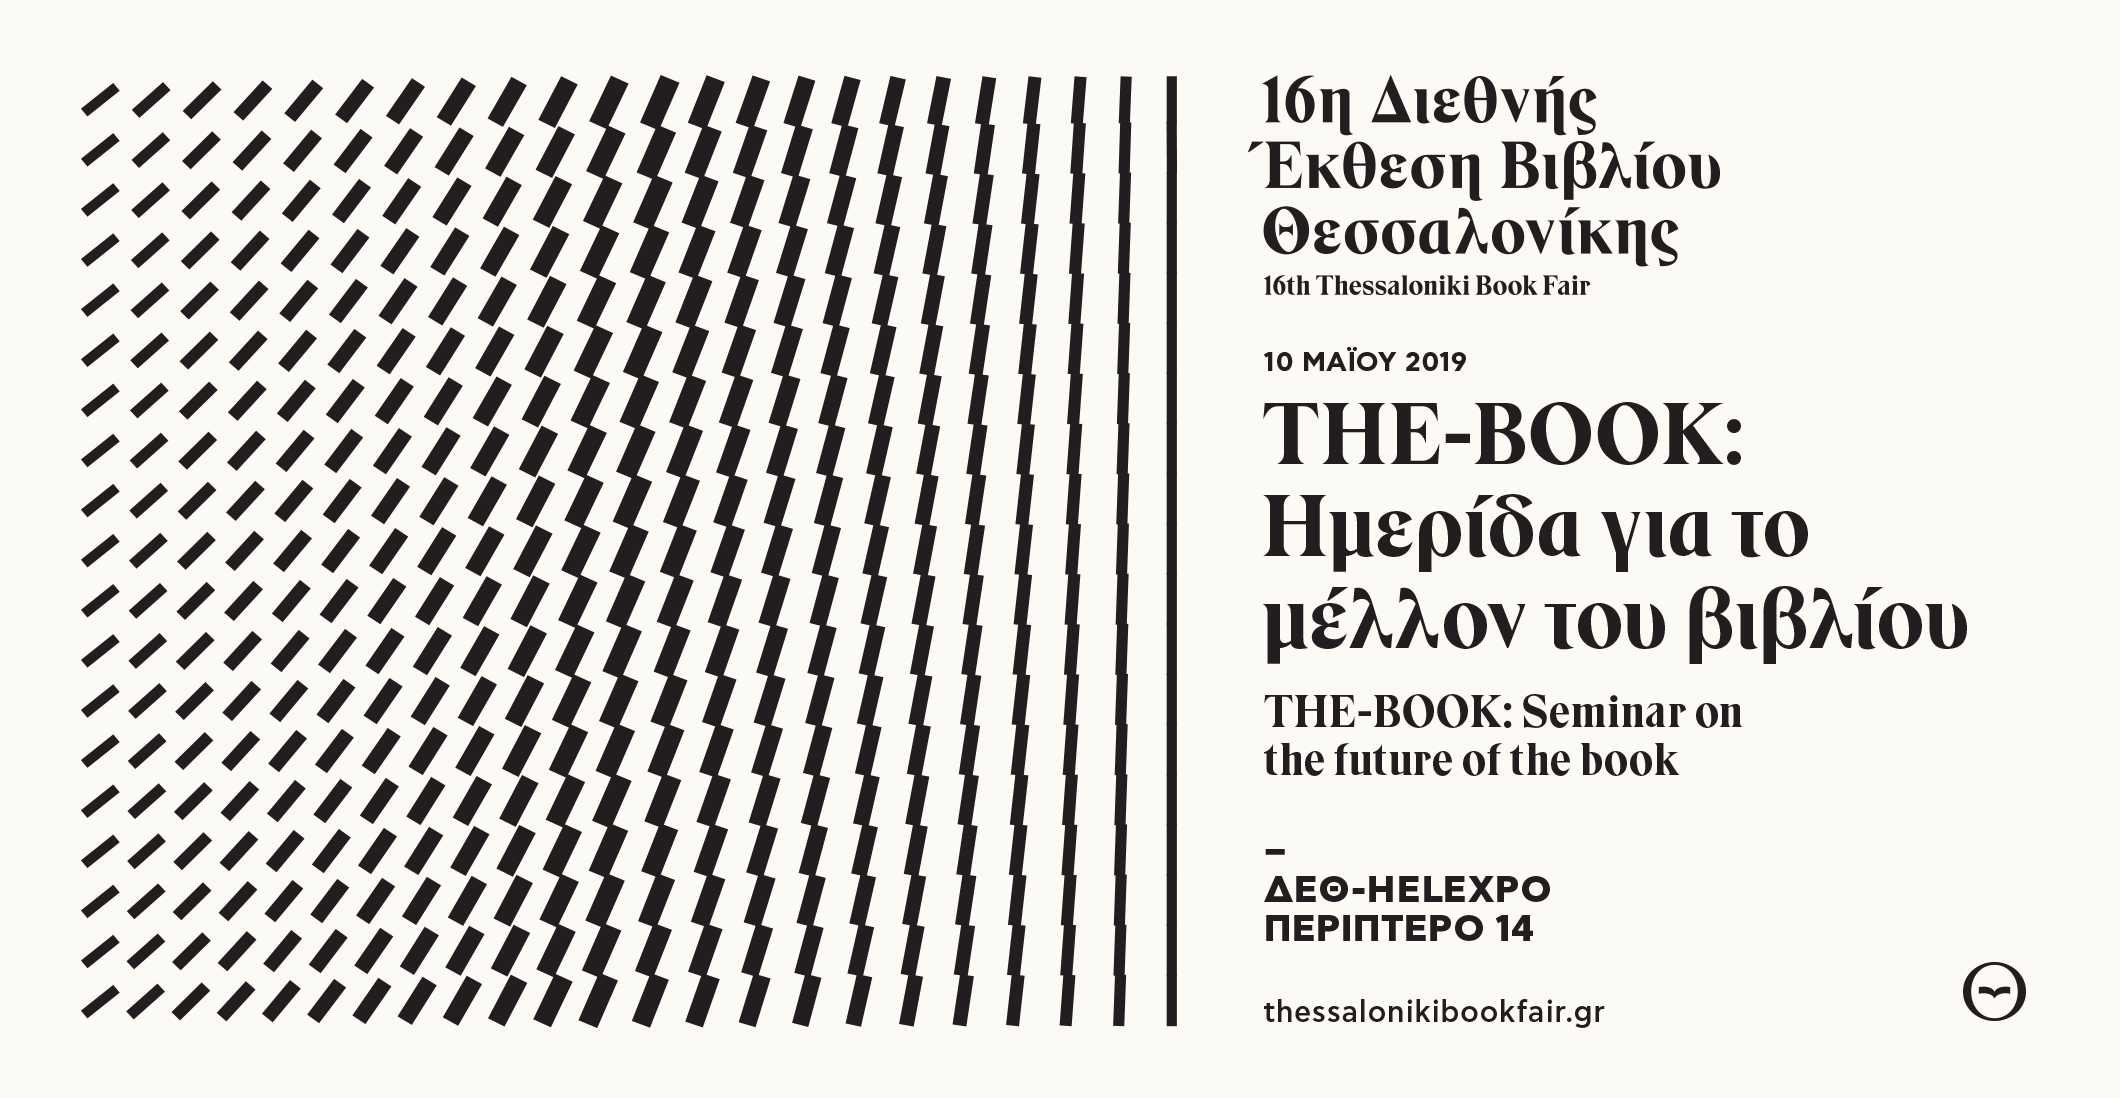 “The-Book: Ημερίδα για το μέλλον του βιβλίου” στη 16η Διεθνή Έκθεση Βιβλίου Θεσσαλονίκης